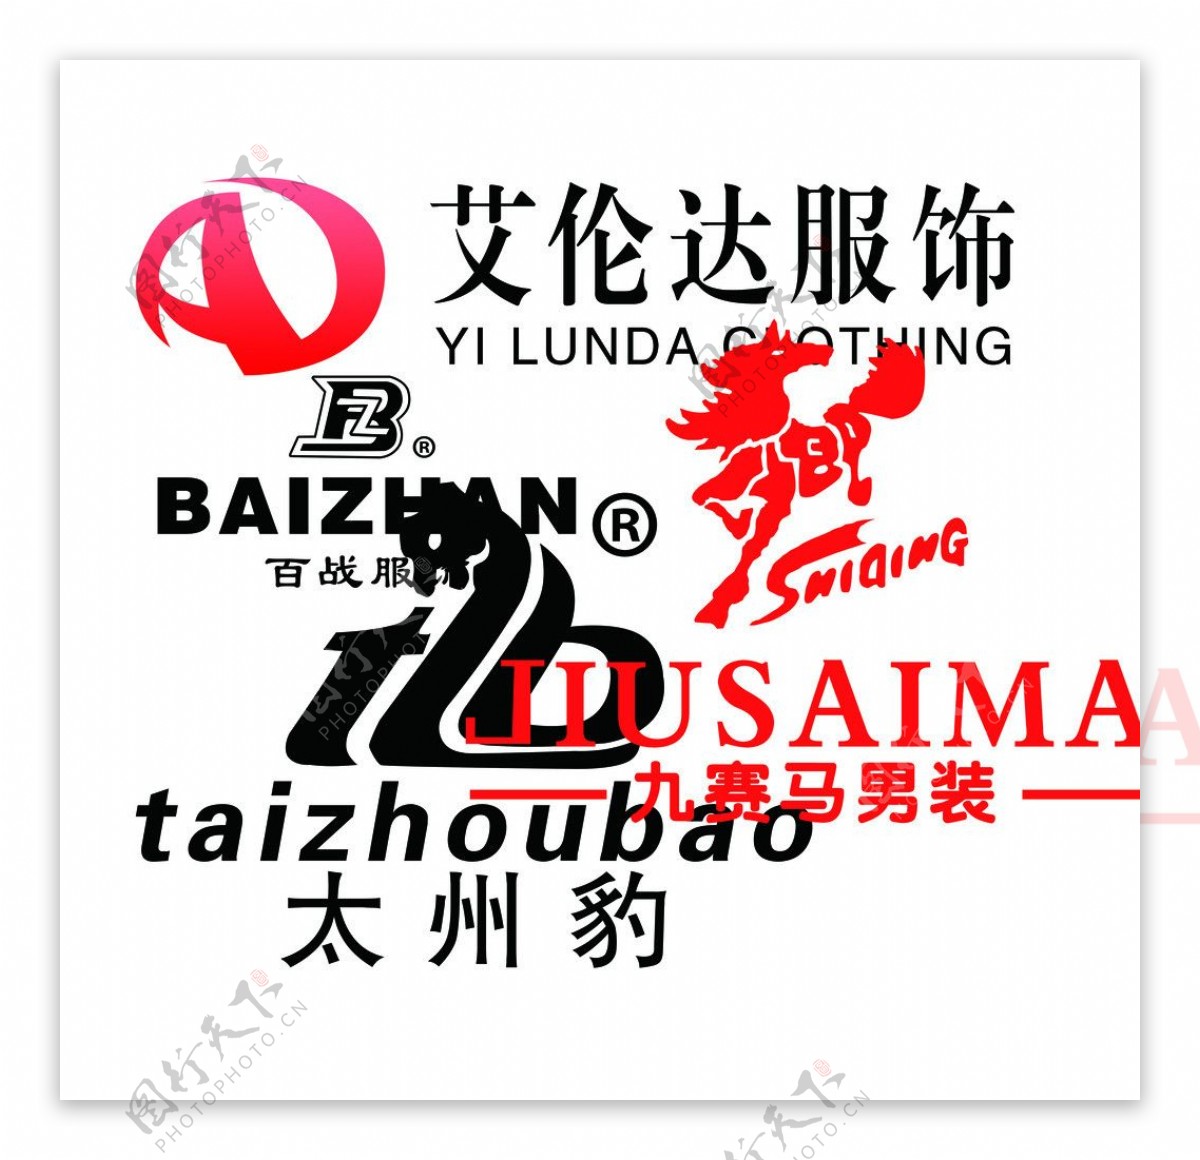 服装品牌logo图片